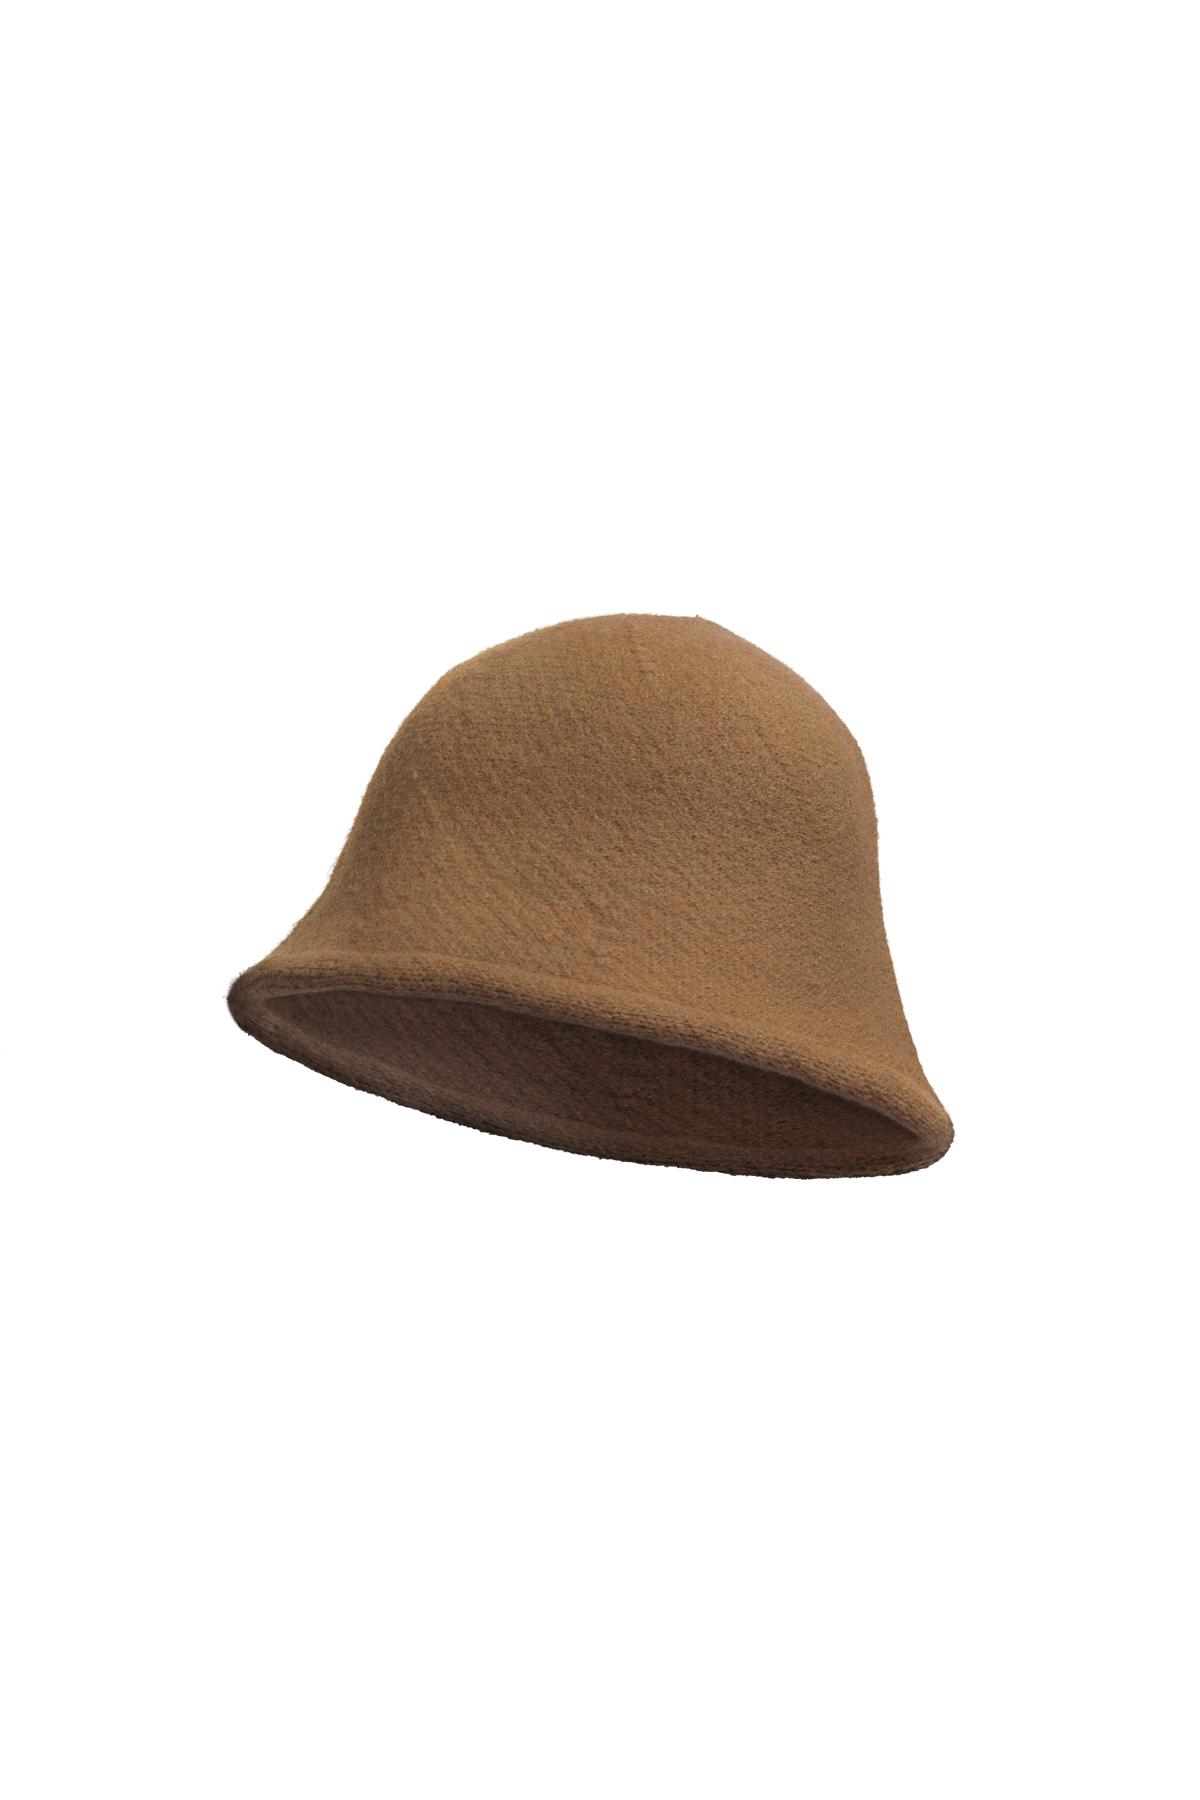 Kova şapka düz renk Camel Acrylic